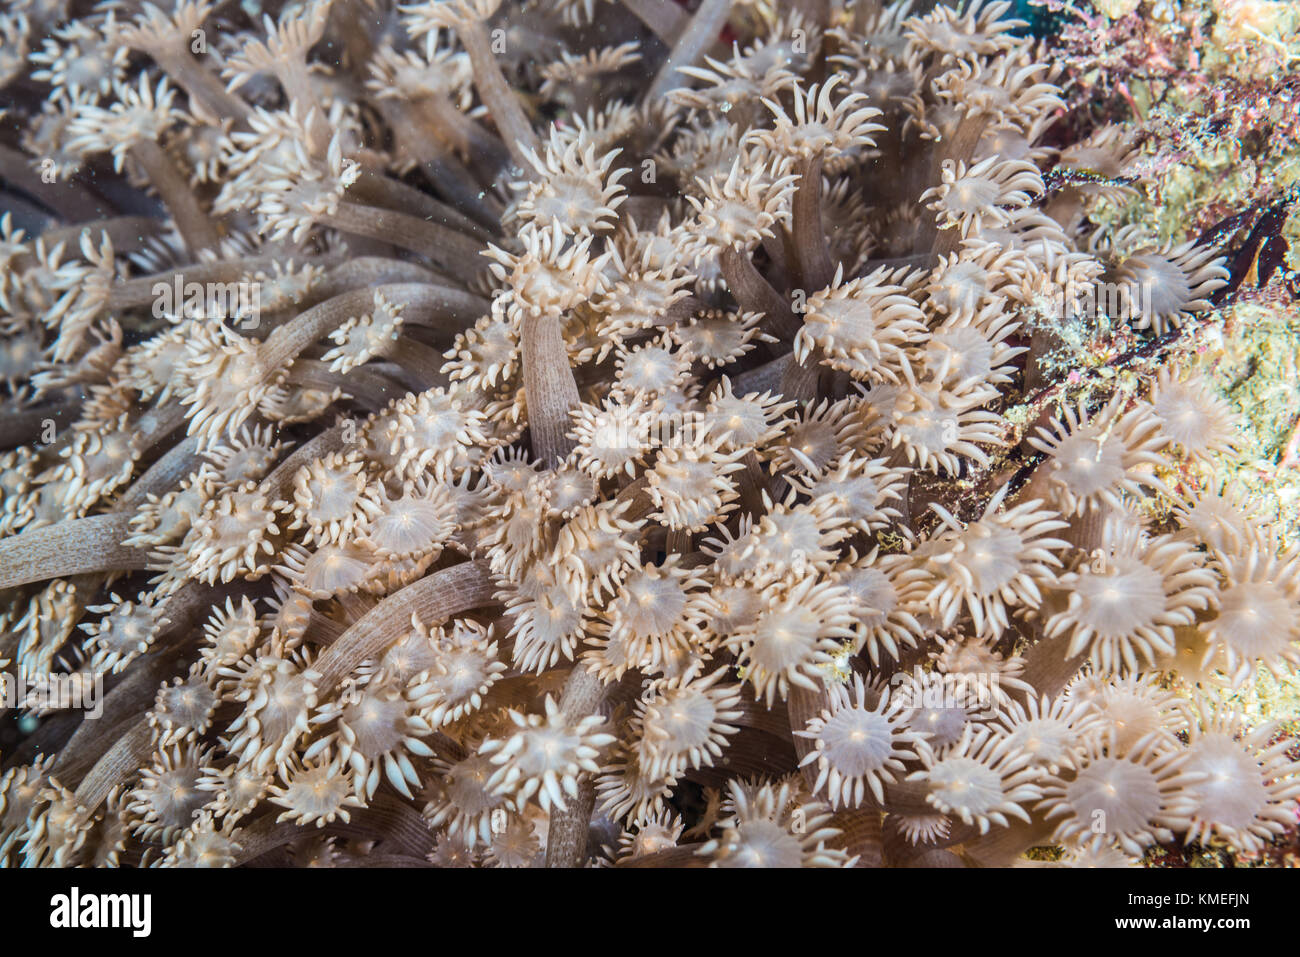 kind a stone coral (Goniopora lobata Milne Edwards, 1860) extending polyps. Owase, Mie, Japan Stock Photo